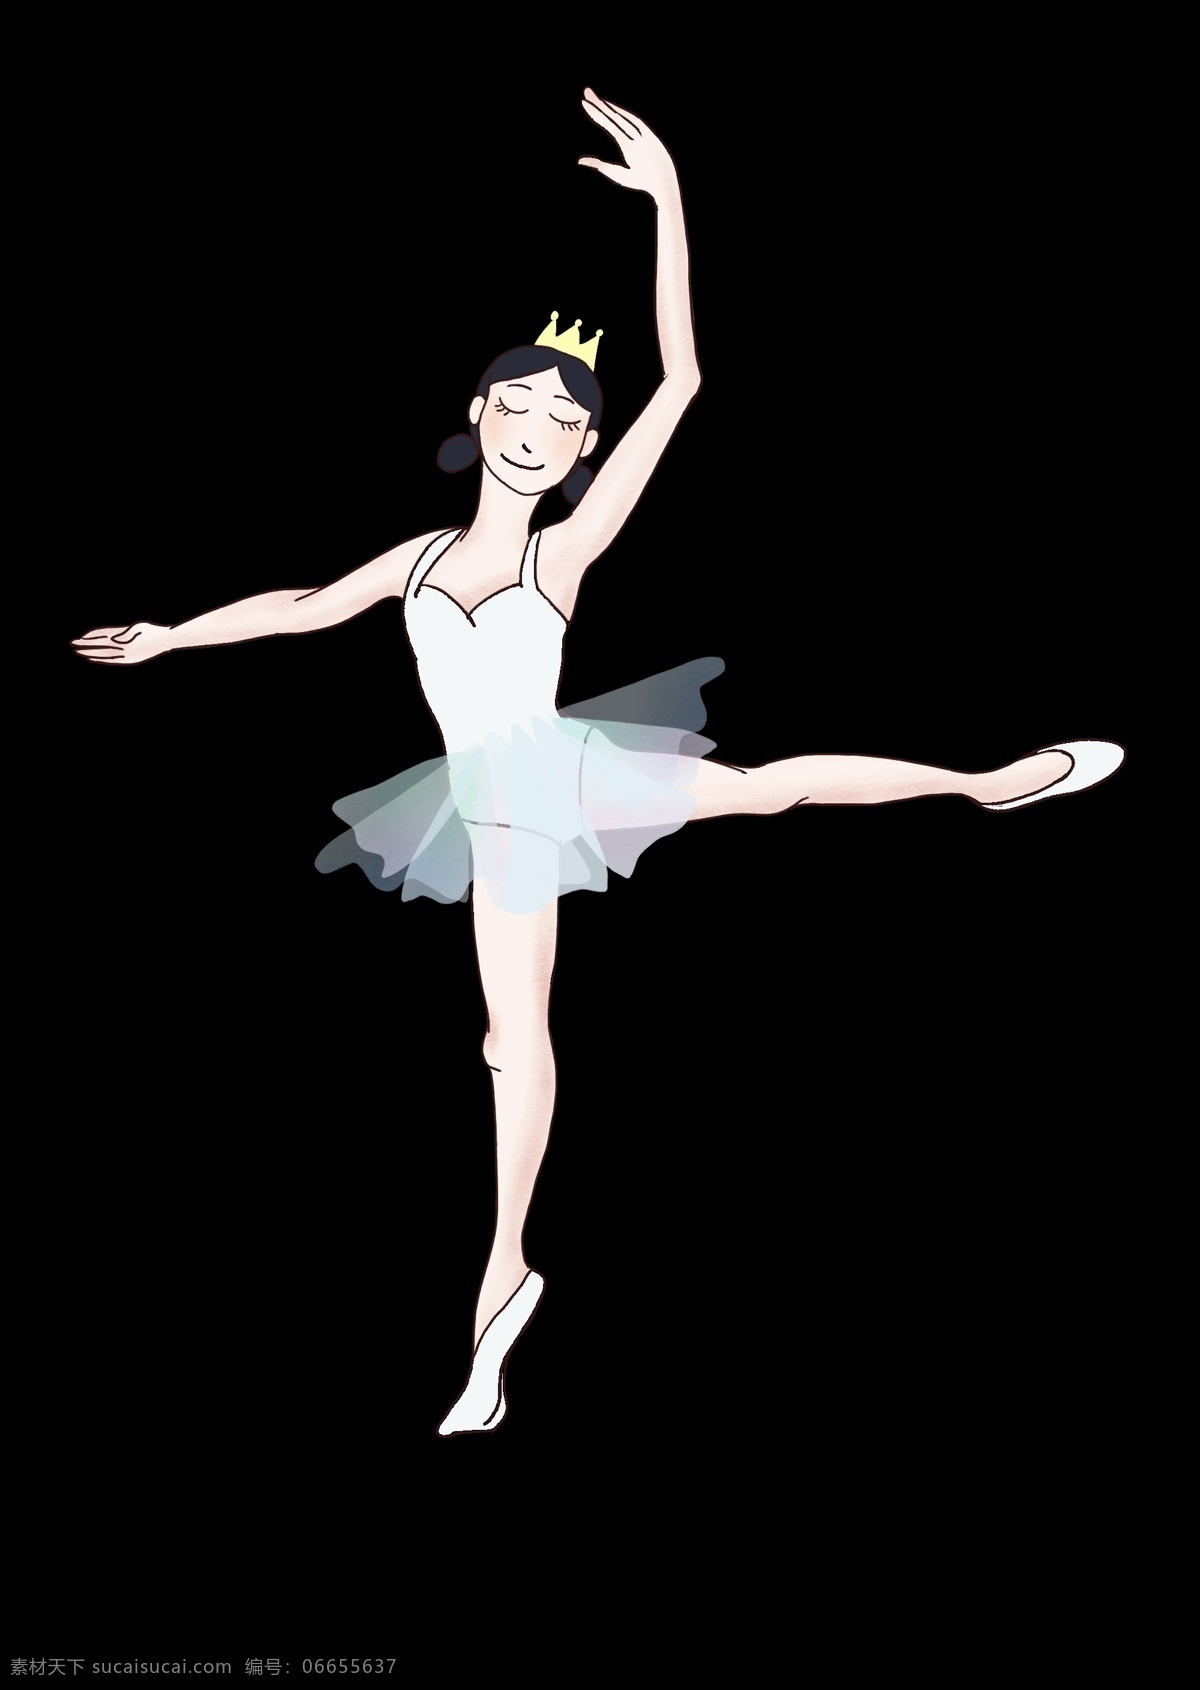 参加 芭蕾舞 比赛 女孩子 白天鹅 跳 旋转跳跃 芭蕾舞服饰 芭蕾舞鞋 可爱的女孩子